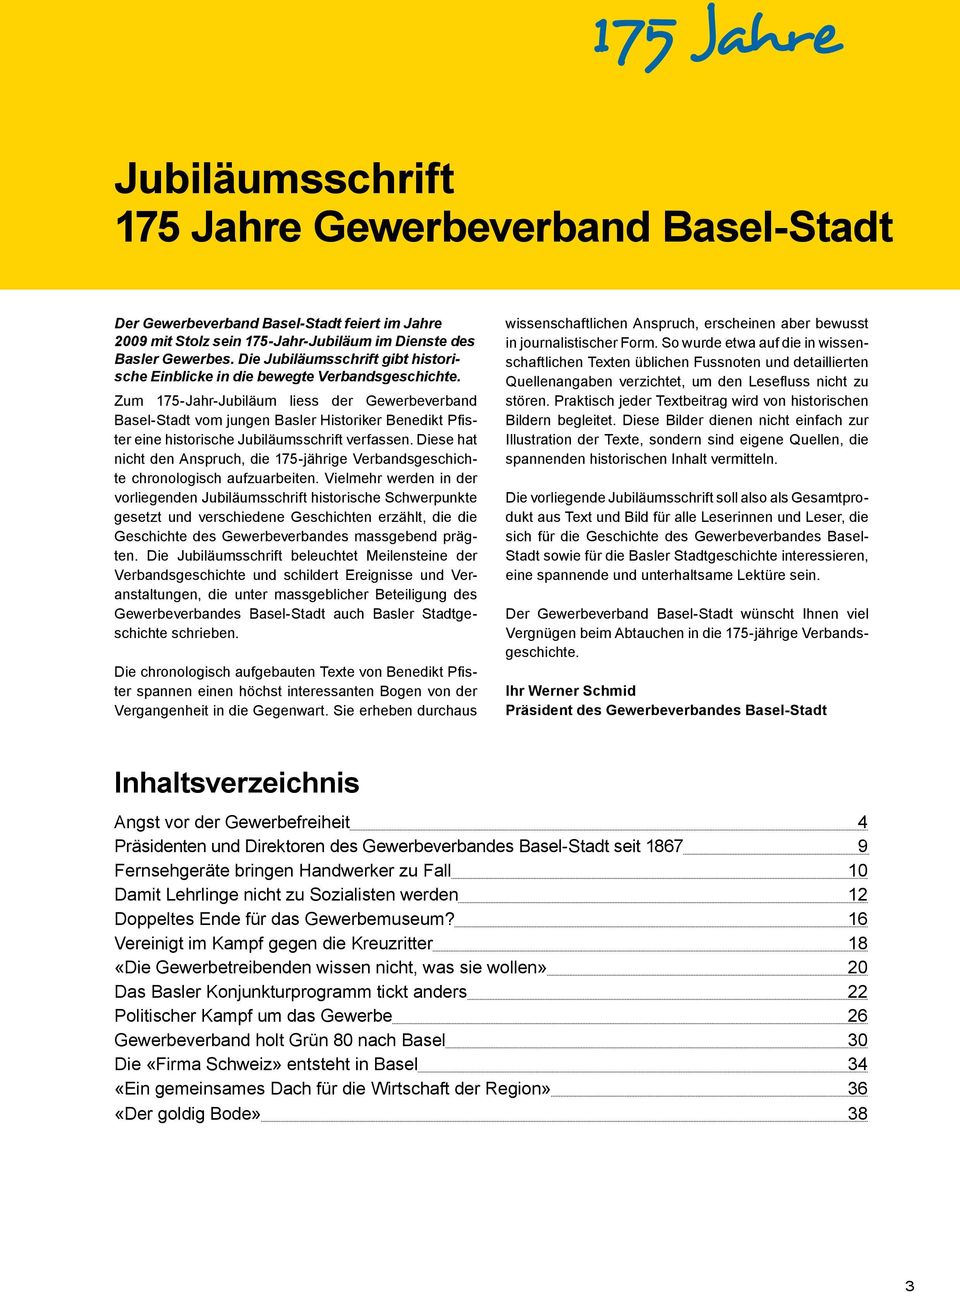 Zum 175-Jahr-Jubiläum liess der Gewerbeverband Basel-Stadt vom jungen Basler Historiker Benedikt Pfister eine historische Jubiläumsschrift verfassen.